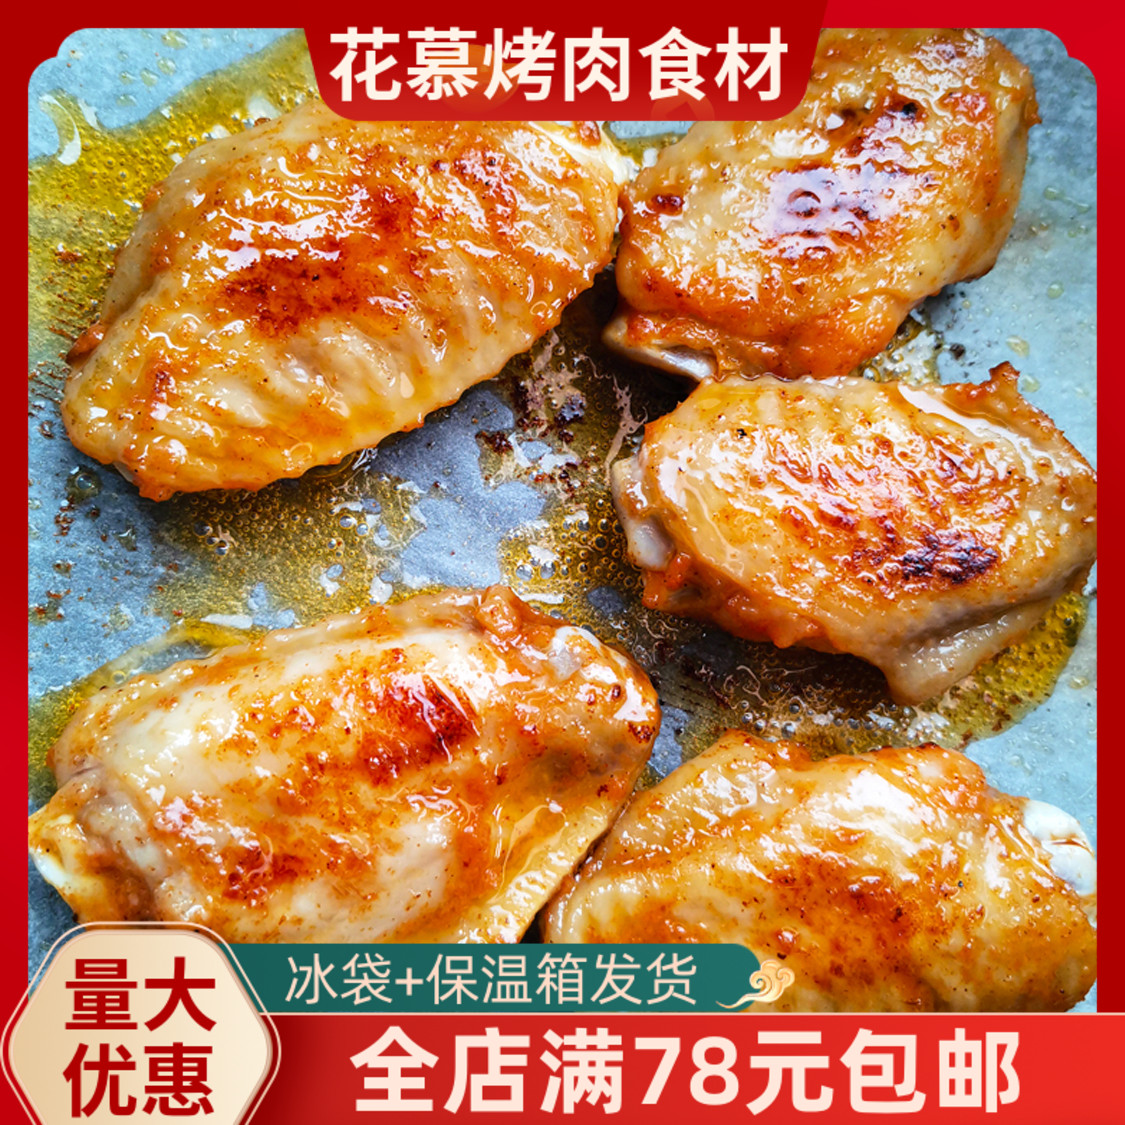 烤肉食材鸡翅中200g韩式腌制烤翅生鲜烧烤商用半成品调理鸡翅中